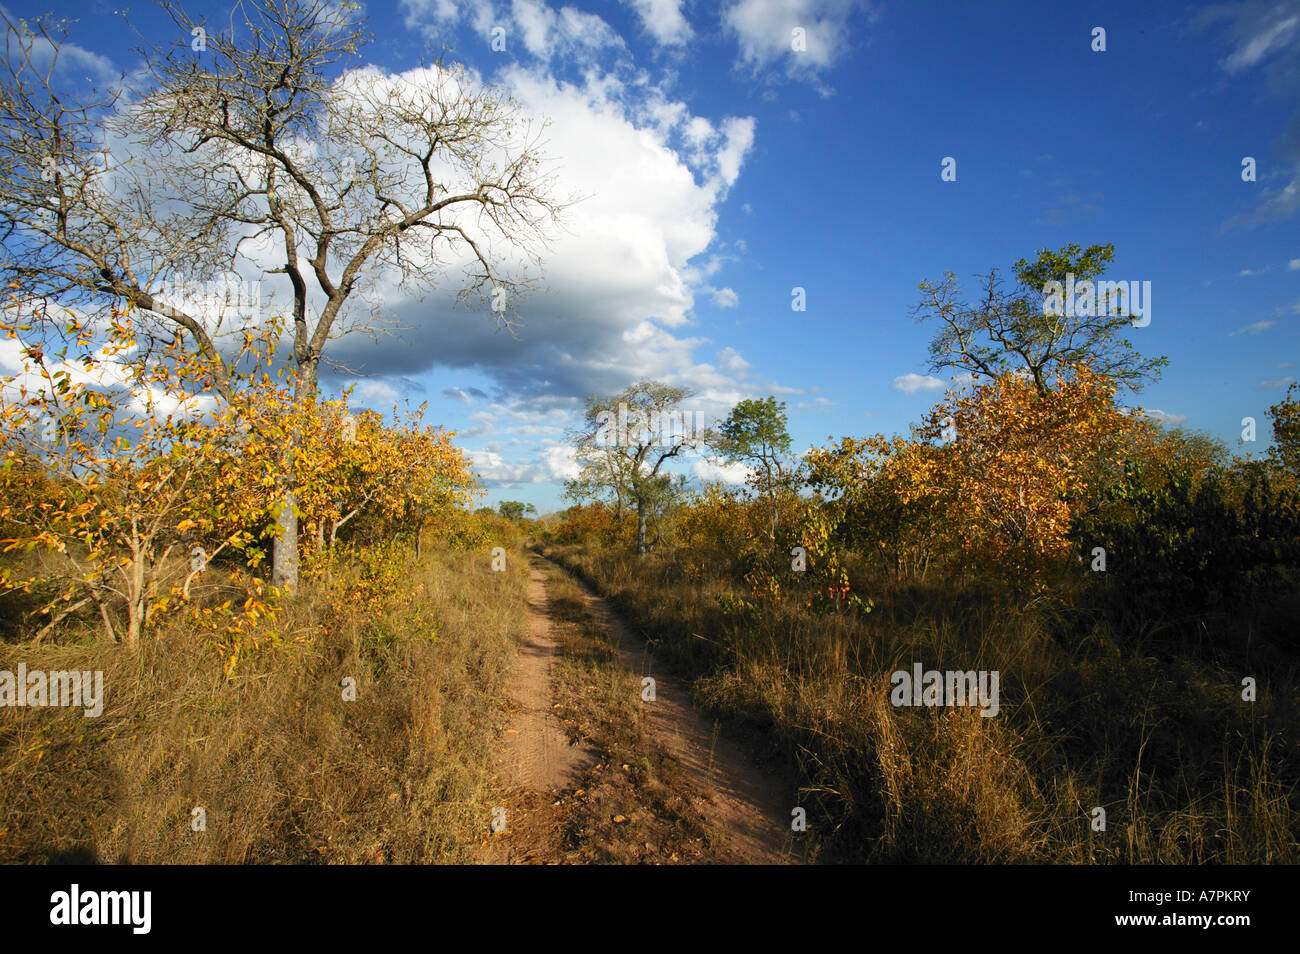 Eine Spur durch eine Bushveld-Szene mit Bäumen und Gräsern in herbstlichen Farbtönen Mpumalanga Lowveld Südafrika Stockfoto